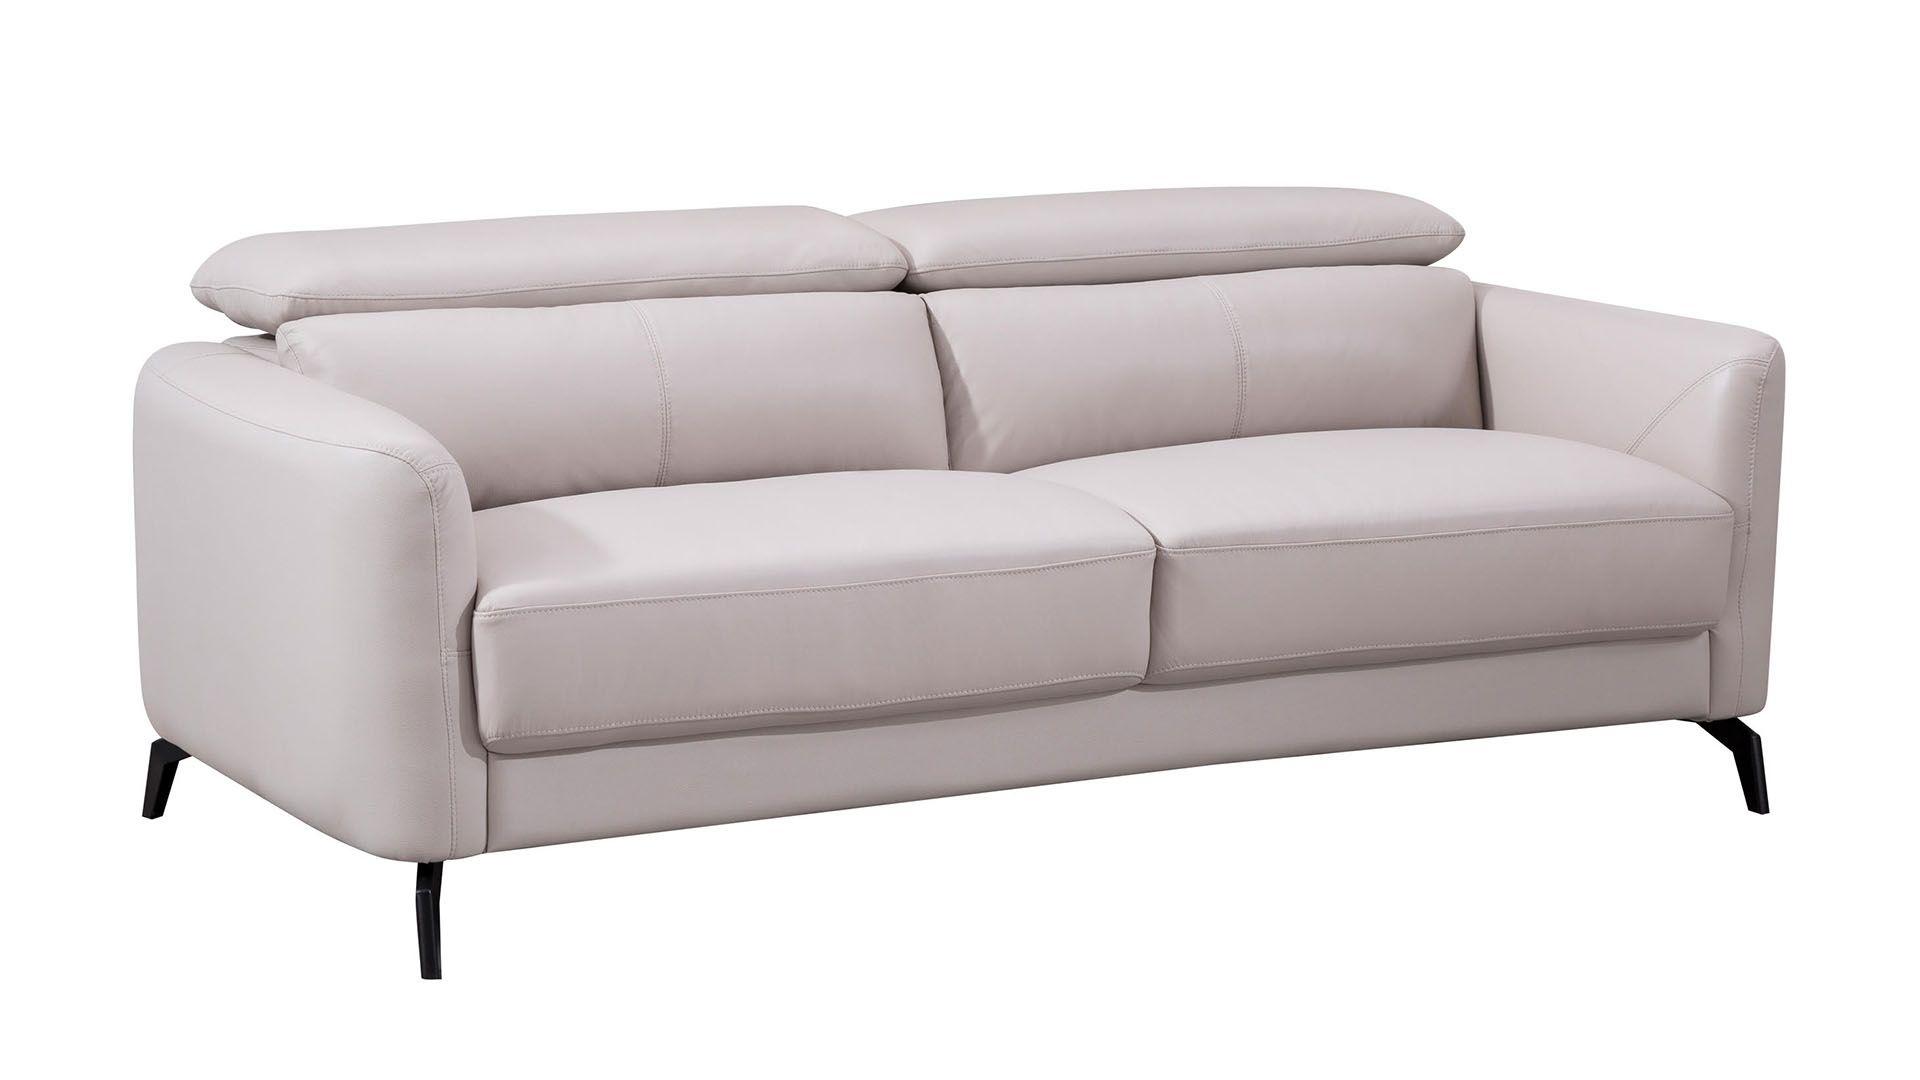 Contemporary, Modern Sofa EK155-LG-SF EK155-LG-SF in Light Gray Italian Leather